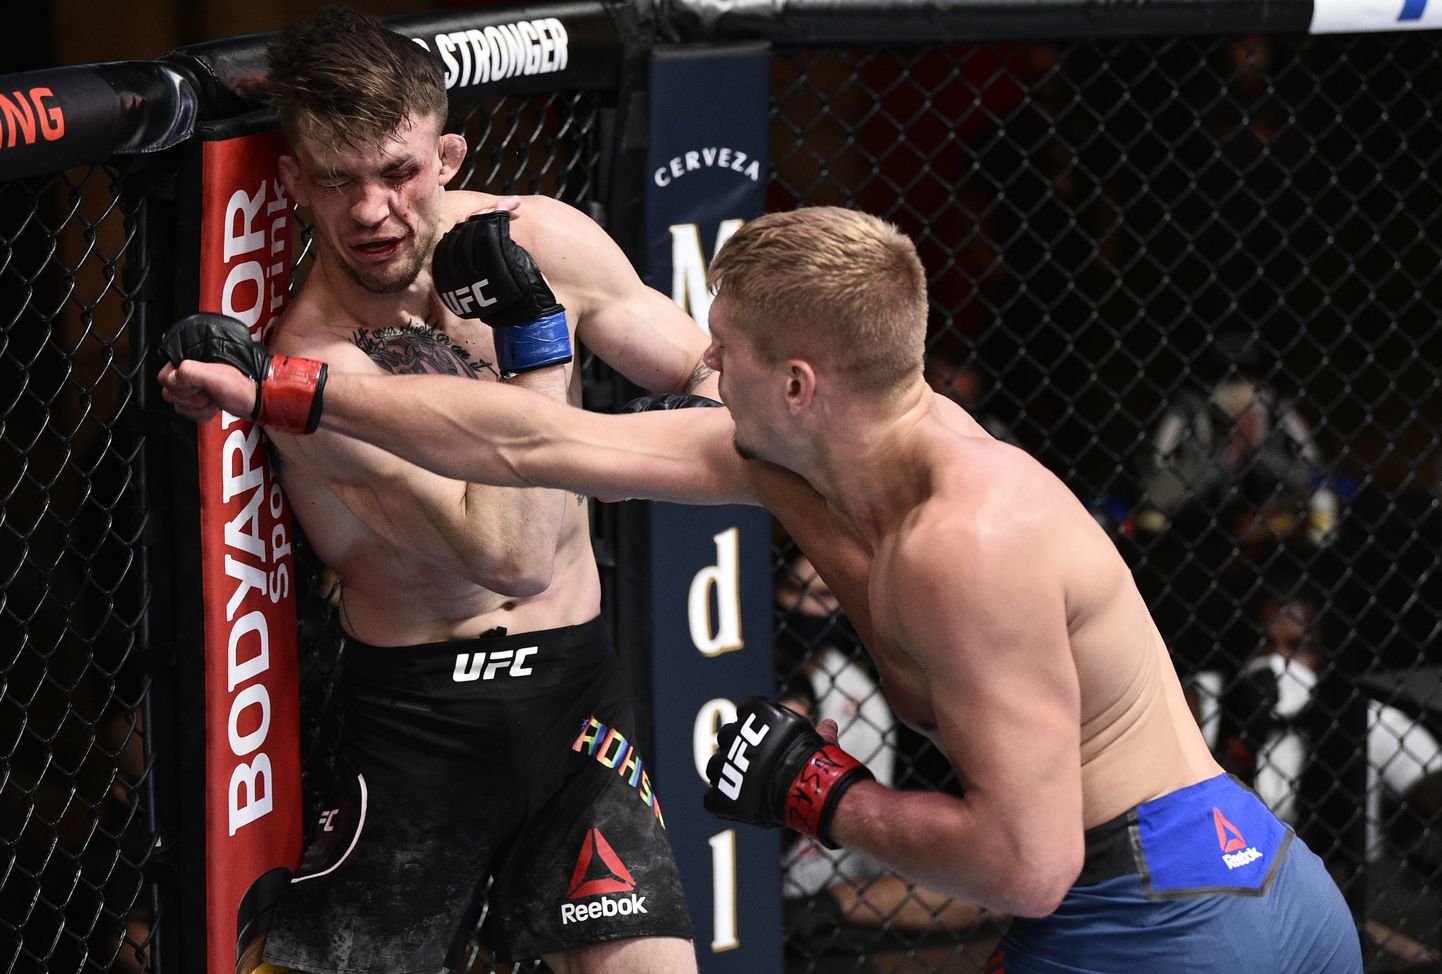 Vabavõitleja Austin Hubbard (paremal) klobis debütanti Max Rohskopfi (vasakul) laupäeval Las Vegases peetud UFC võitlusõhtul.